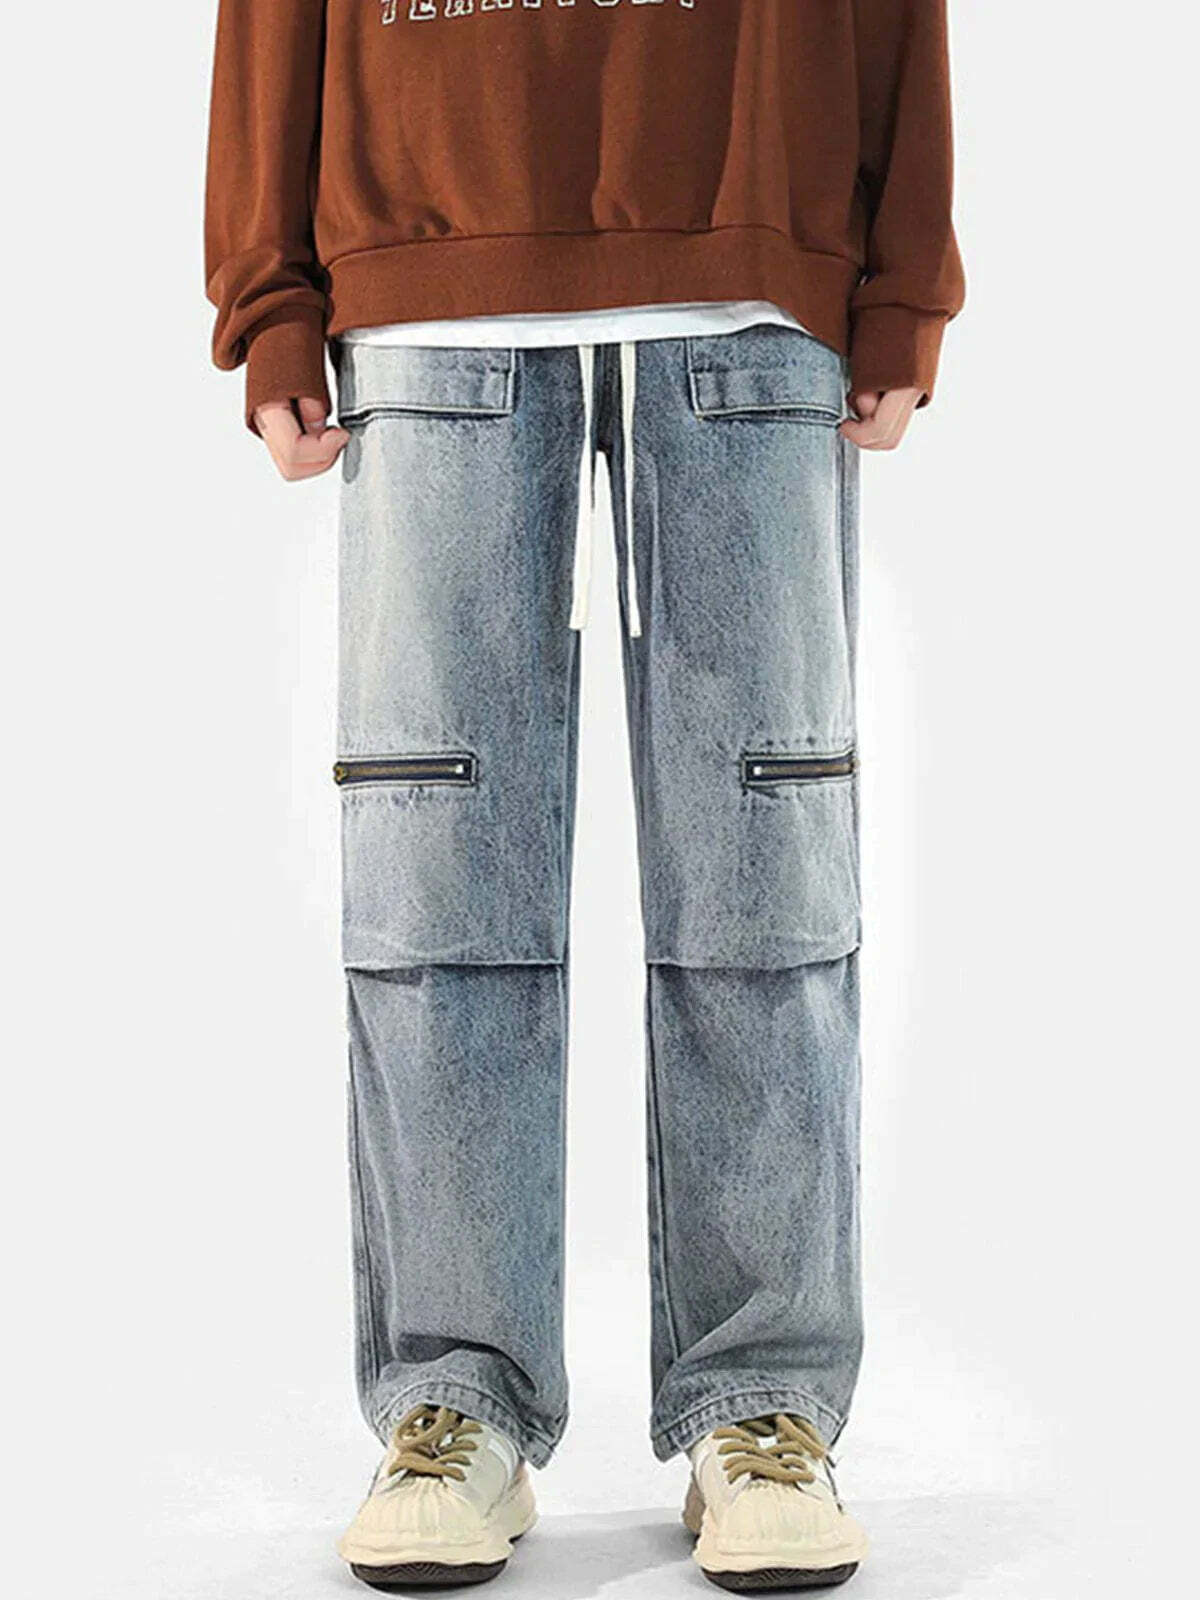 revolutionary drawstring jeans zip pocket detail 3481